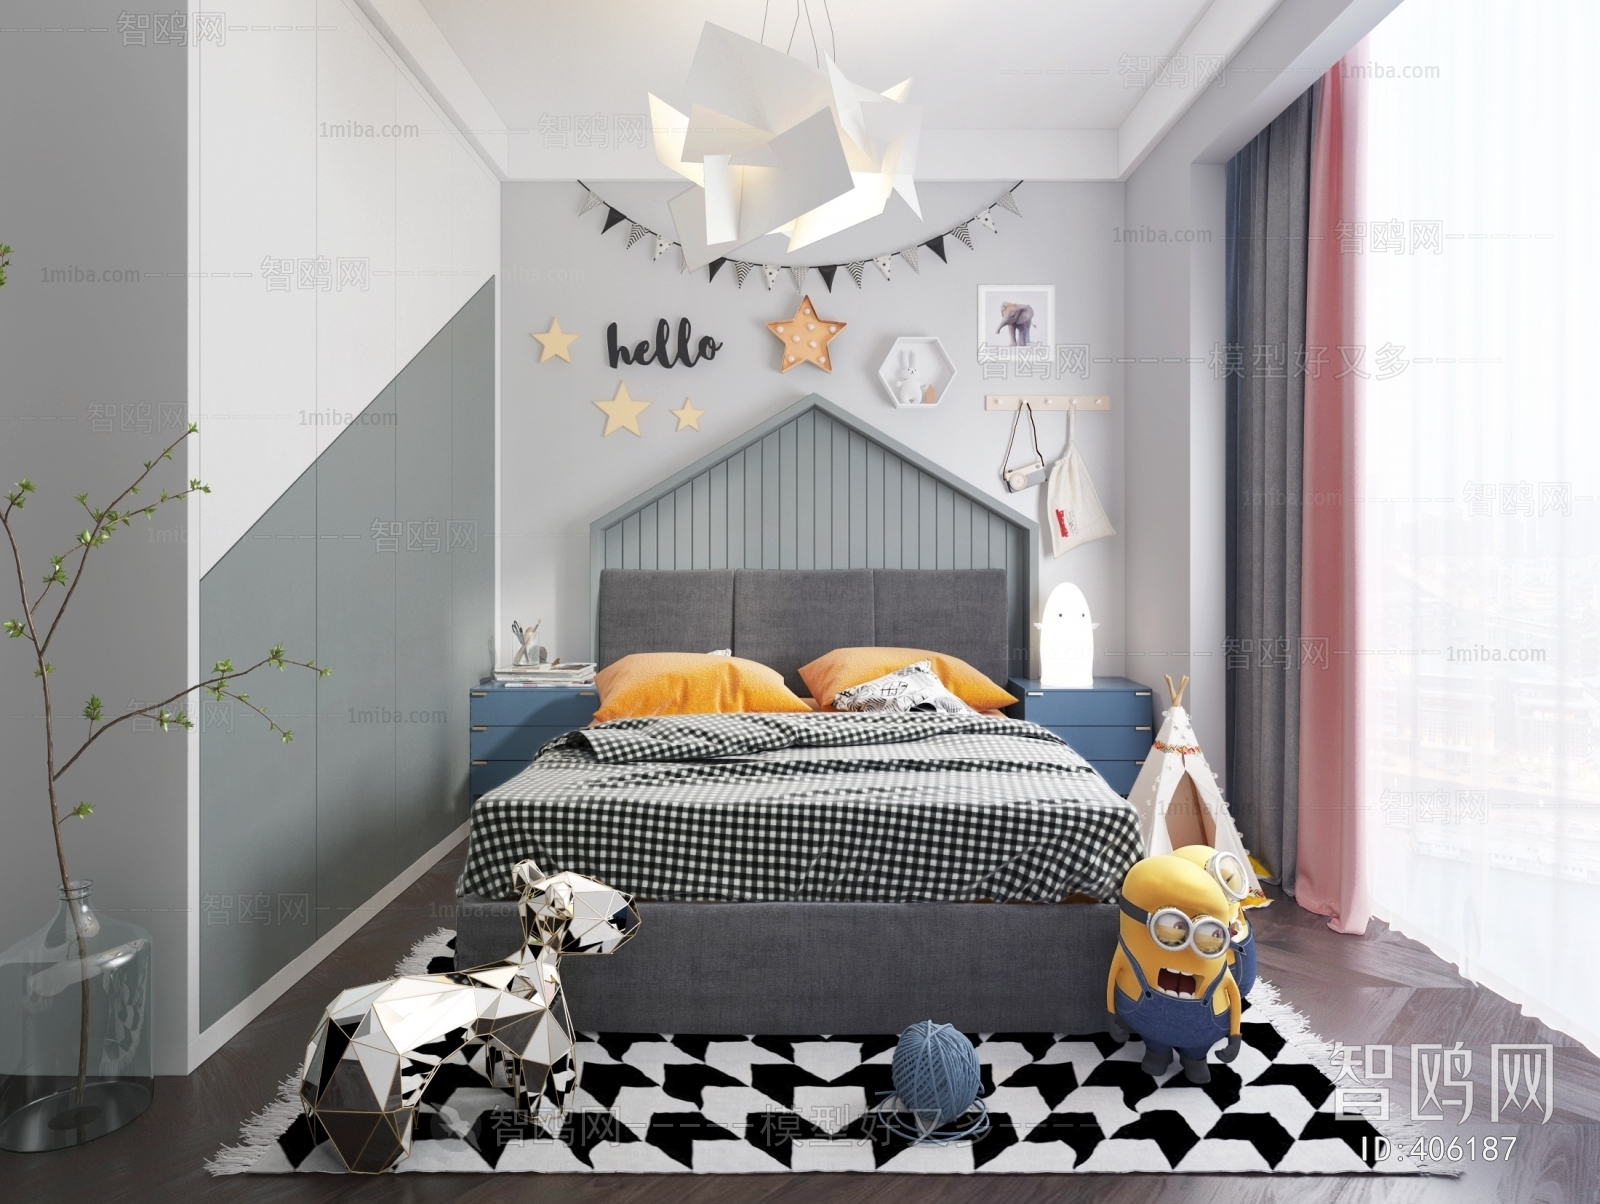 Nordic Style Children's Room